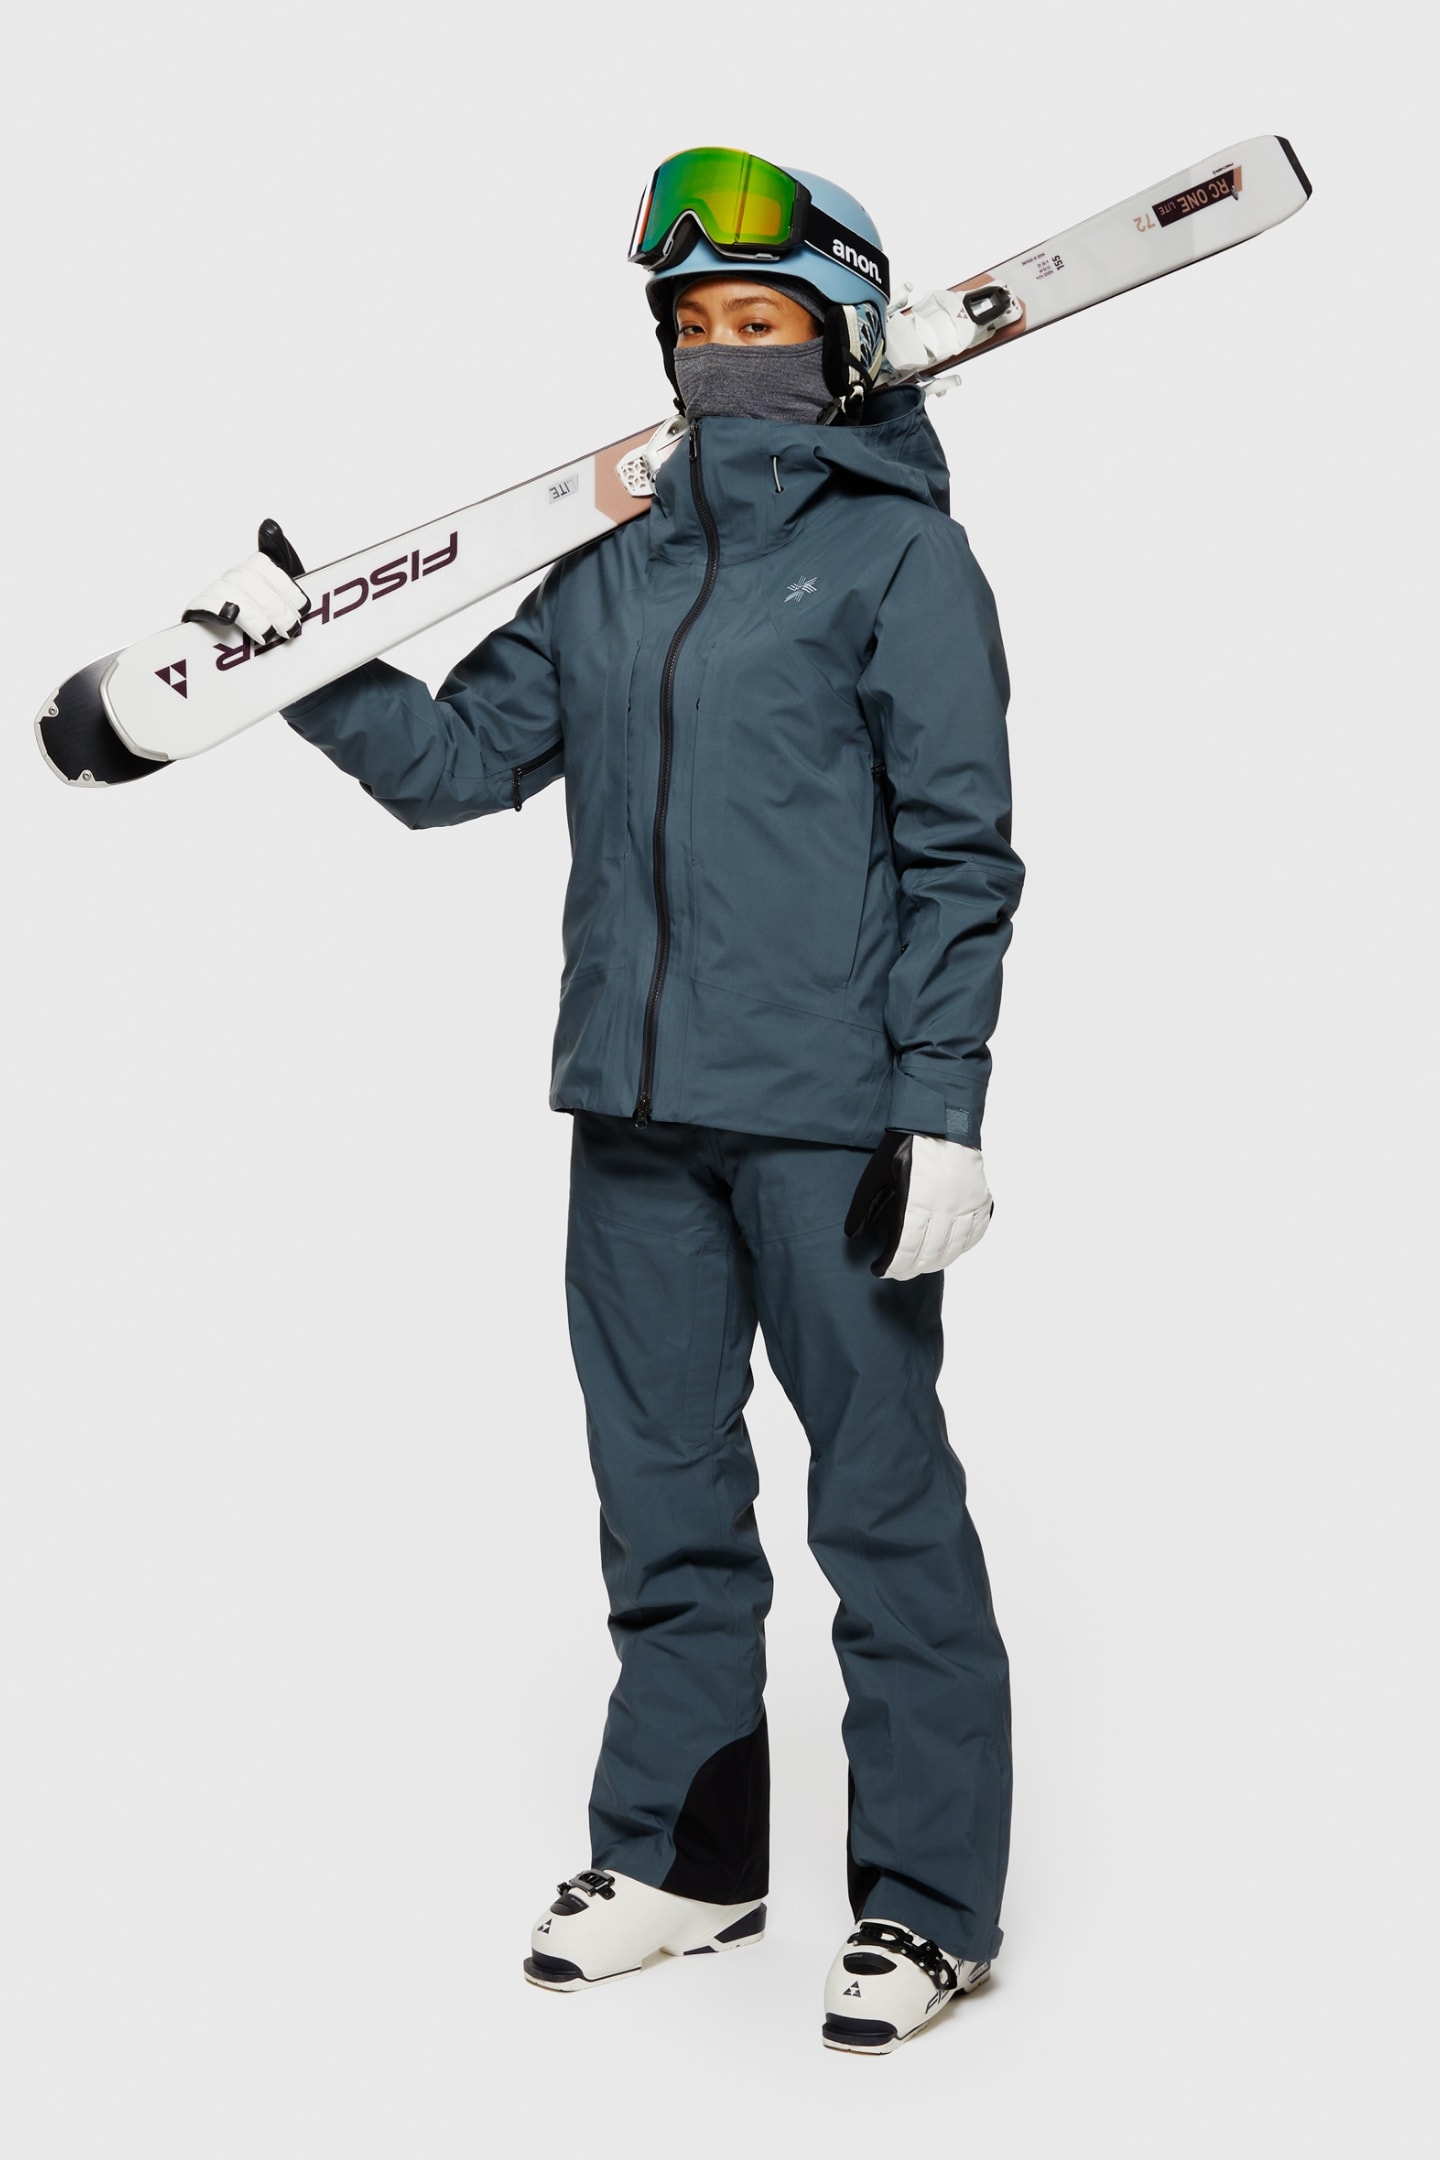 驚きの破格値SALEゴールドウィン GORE-TEX レディーススキーウェア スキー